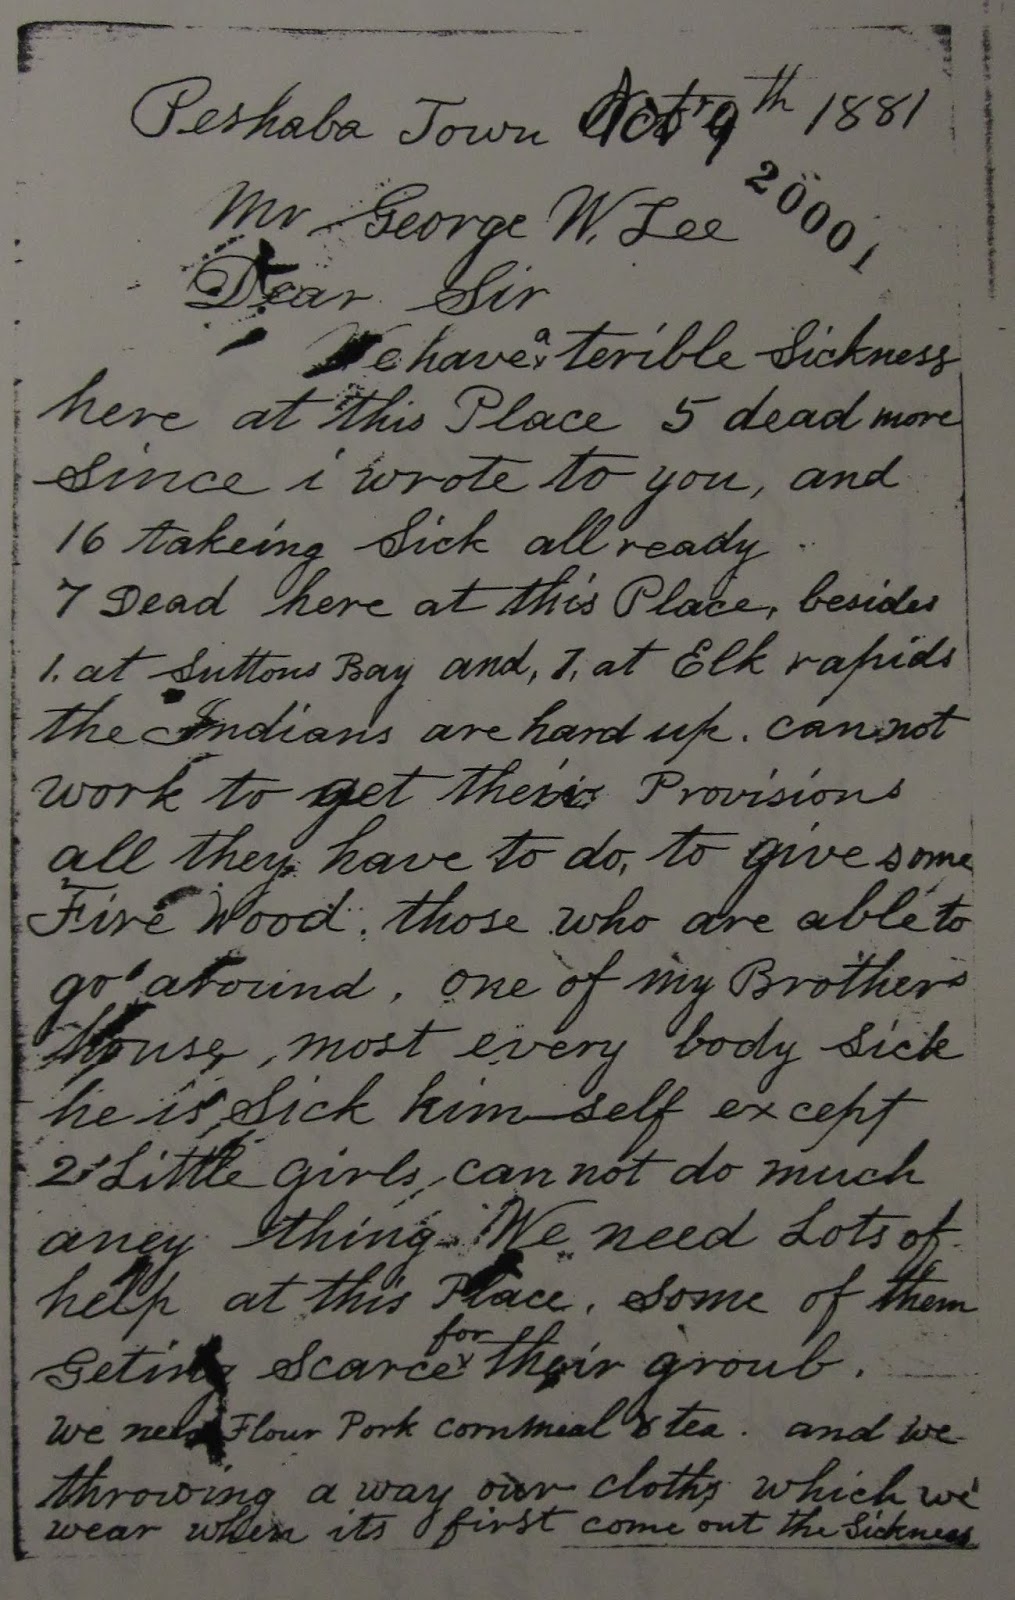 Photo of a handwritten letter.